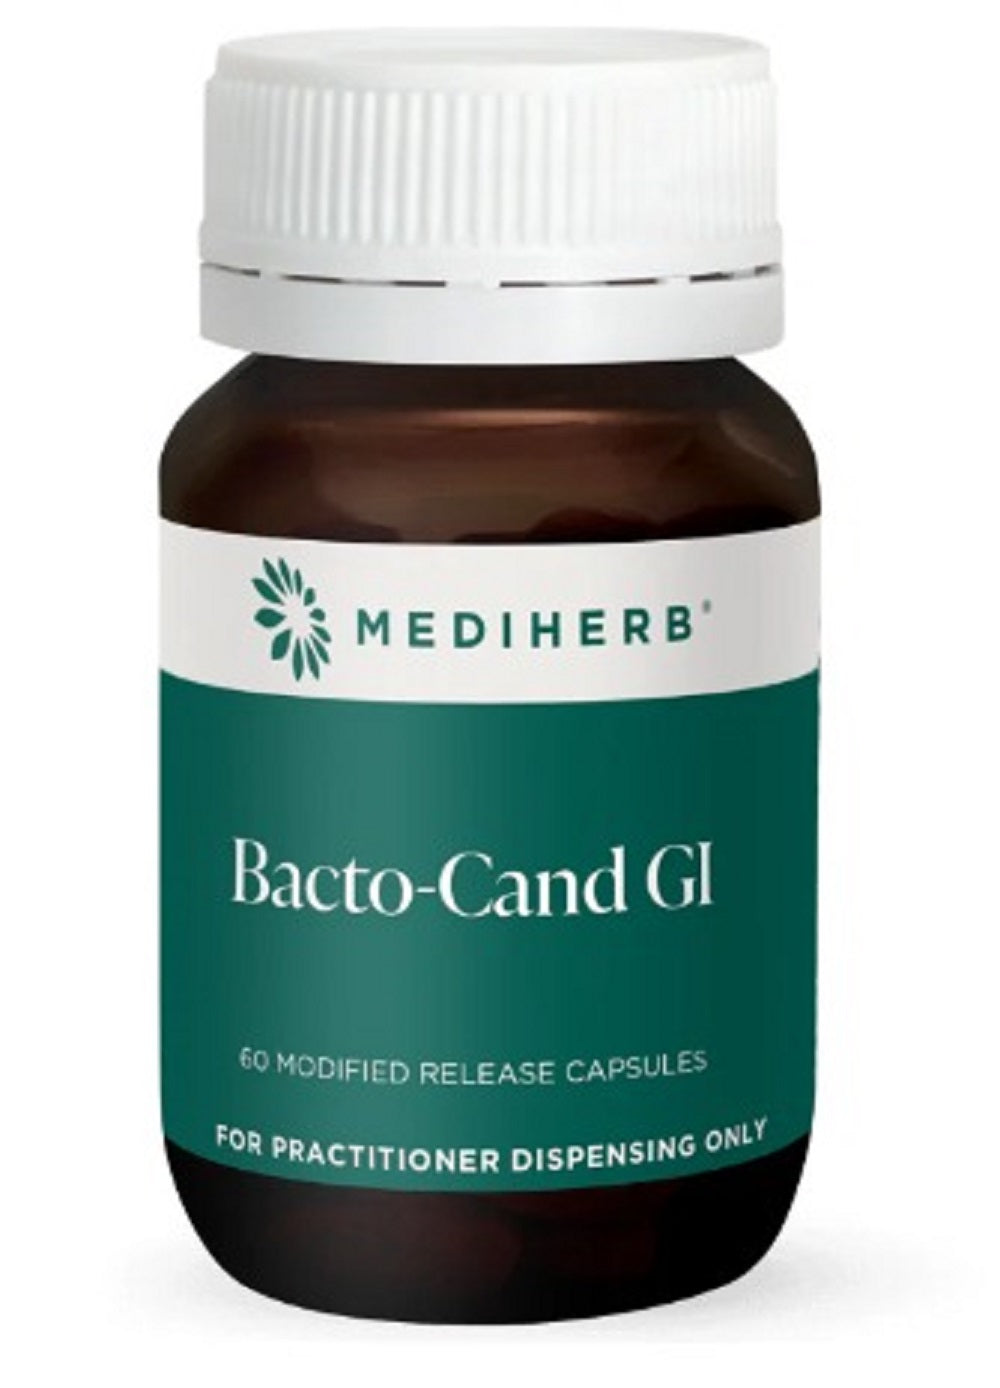 Mediherb Bacto-Cand GI 60 Capsules